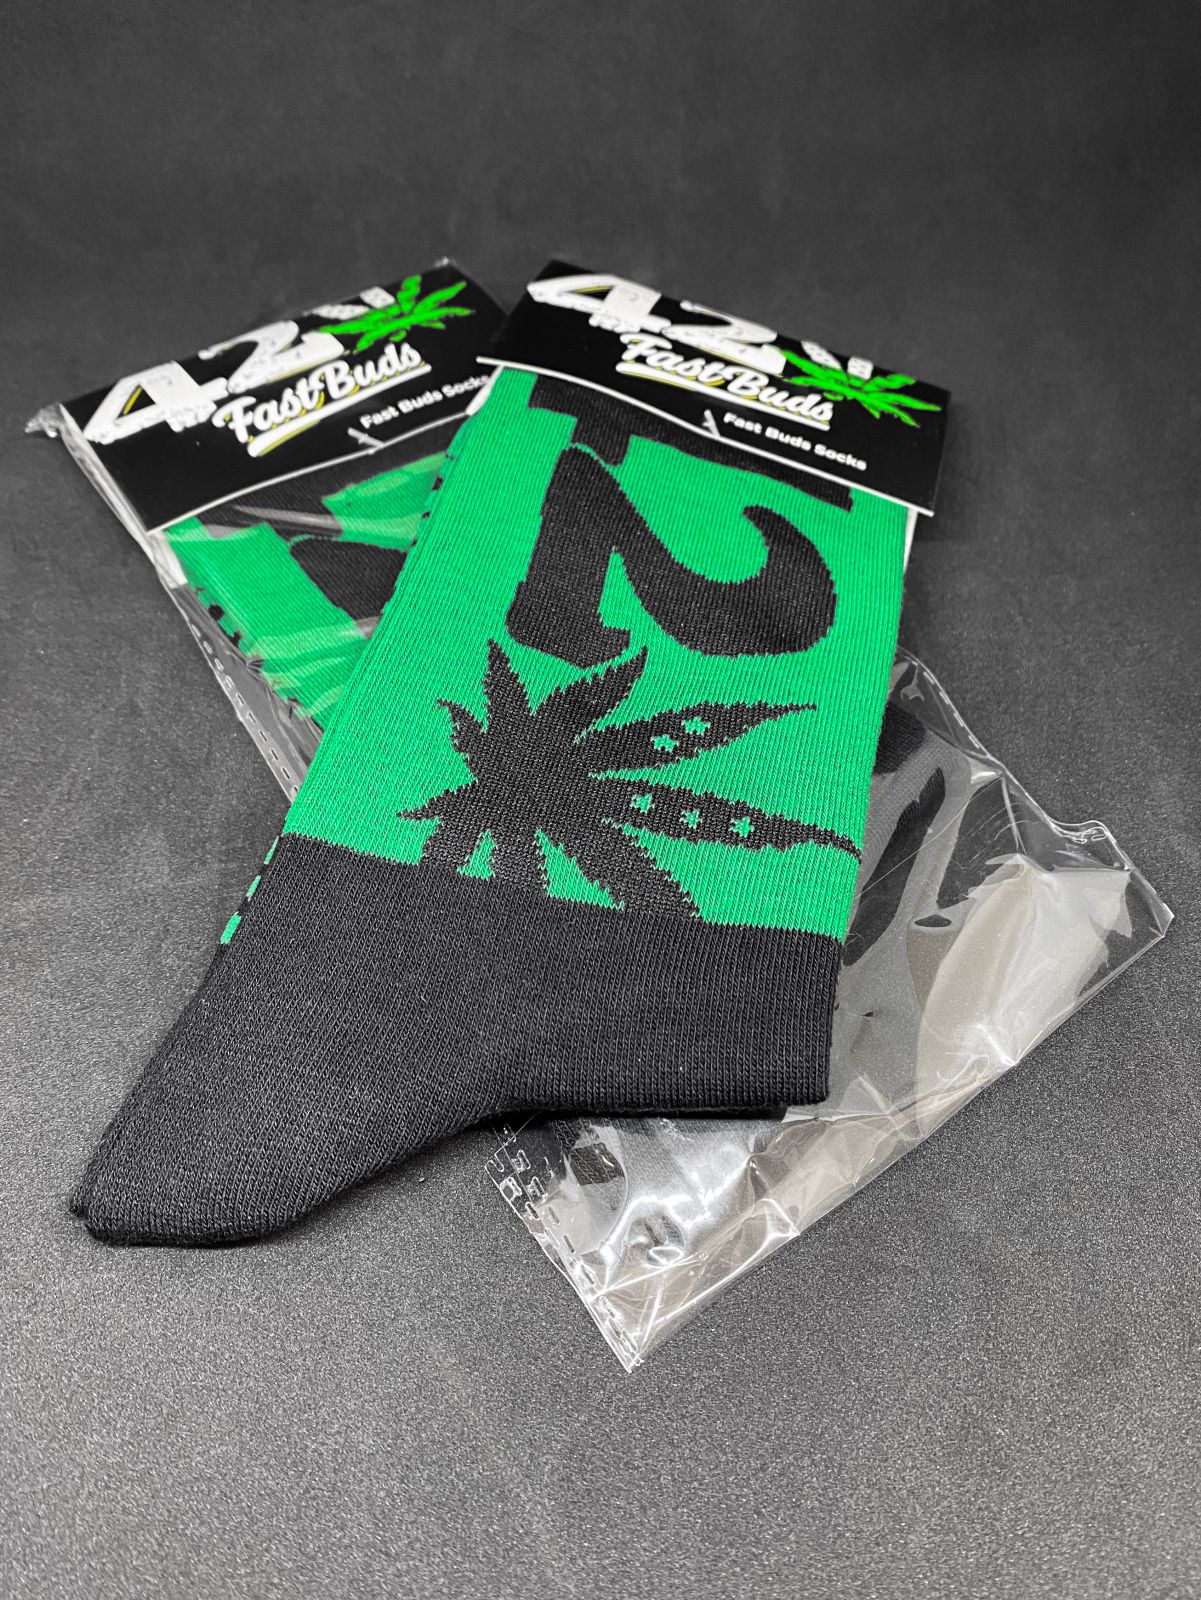 420 Socks | SeedsPlug